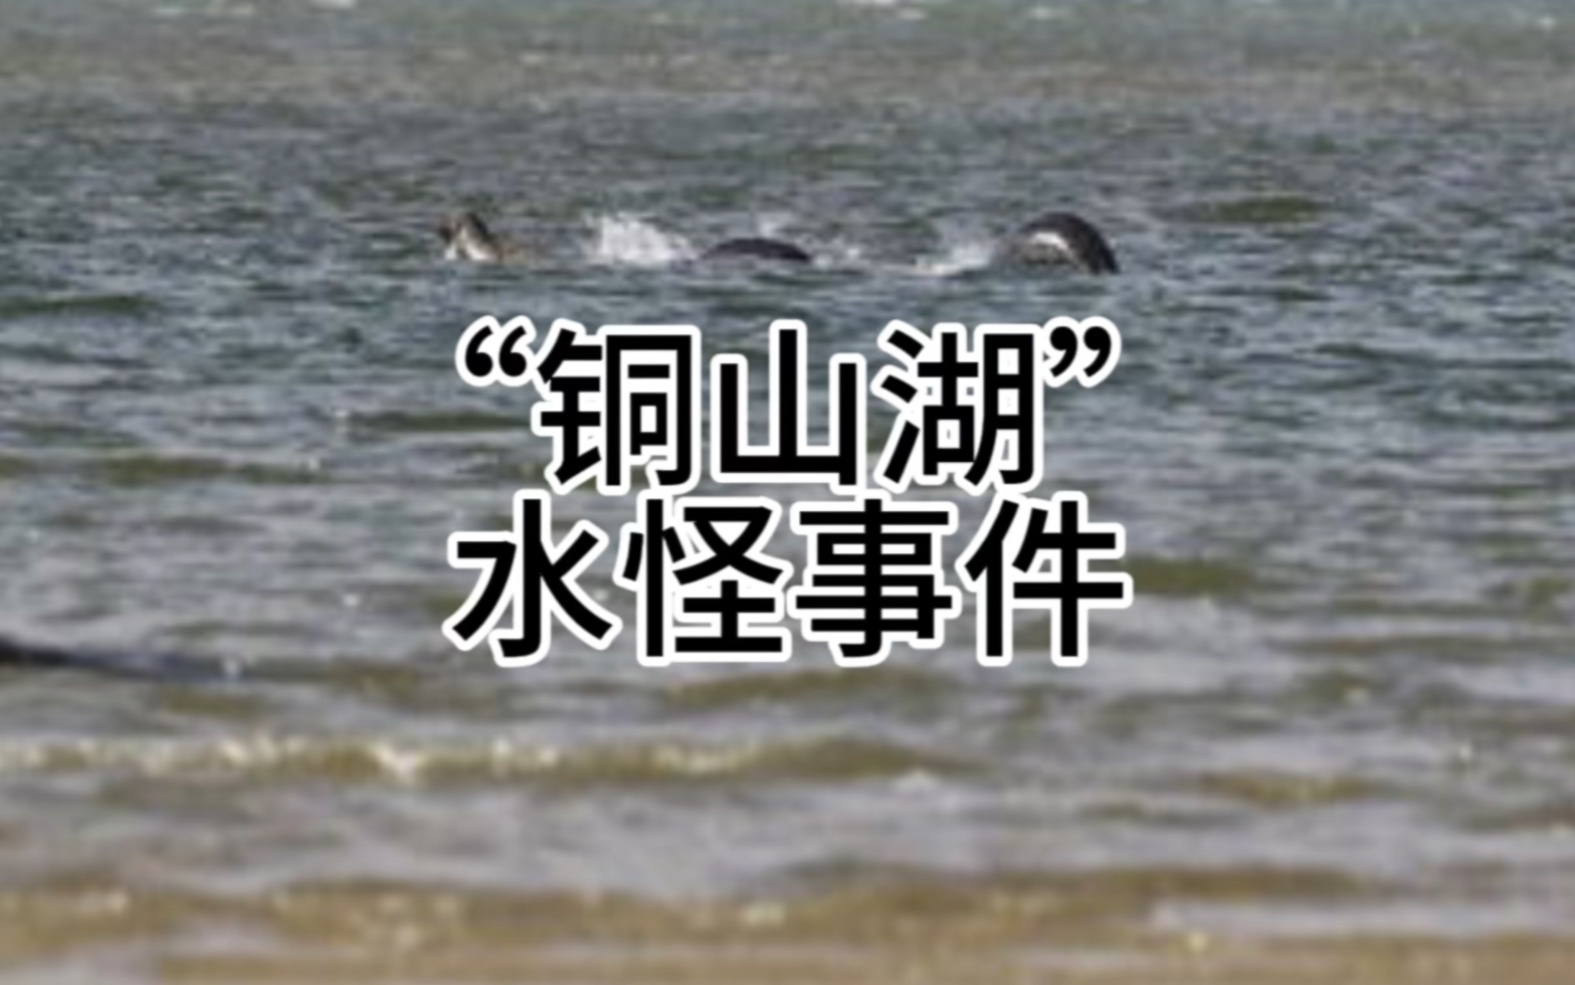 【奇闻轶事】铜山湖水怪事件